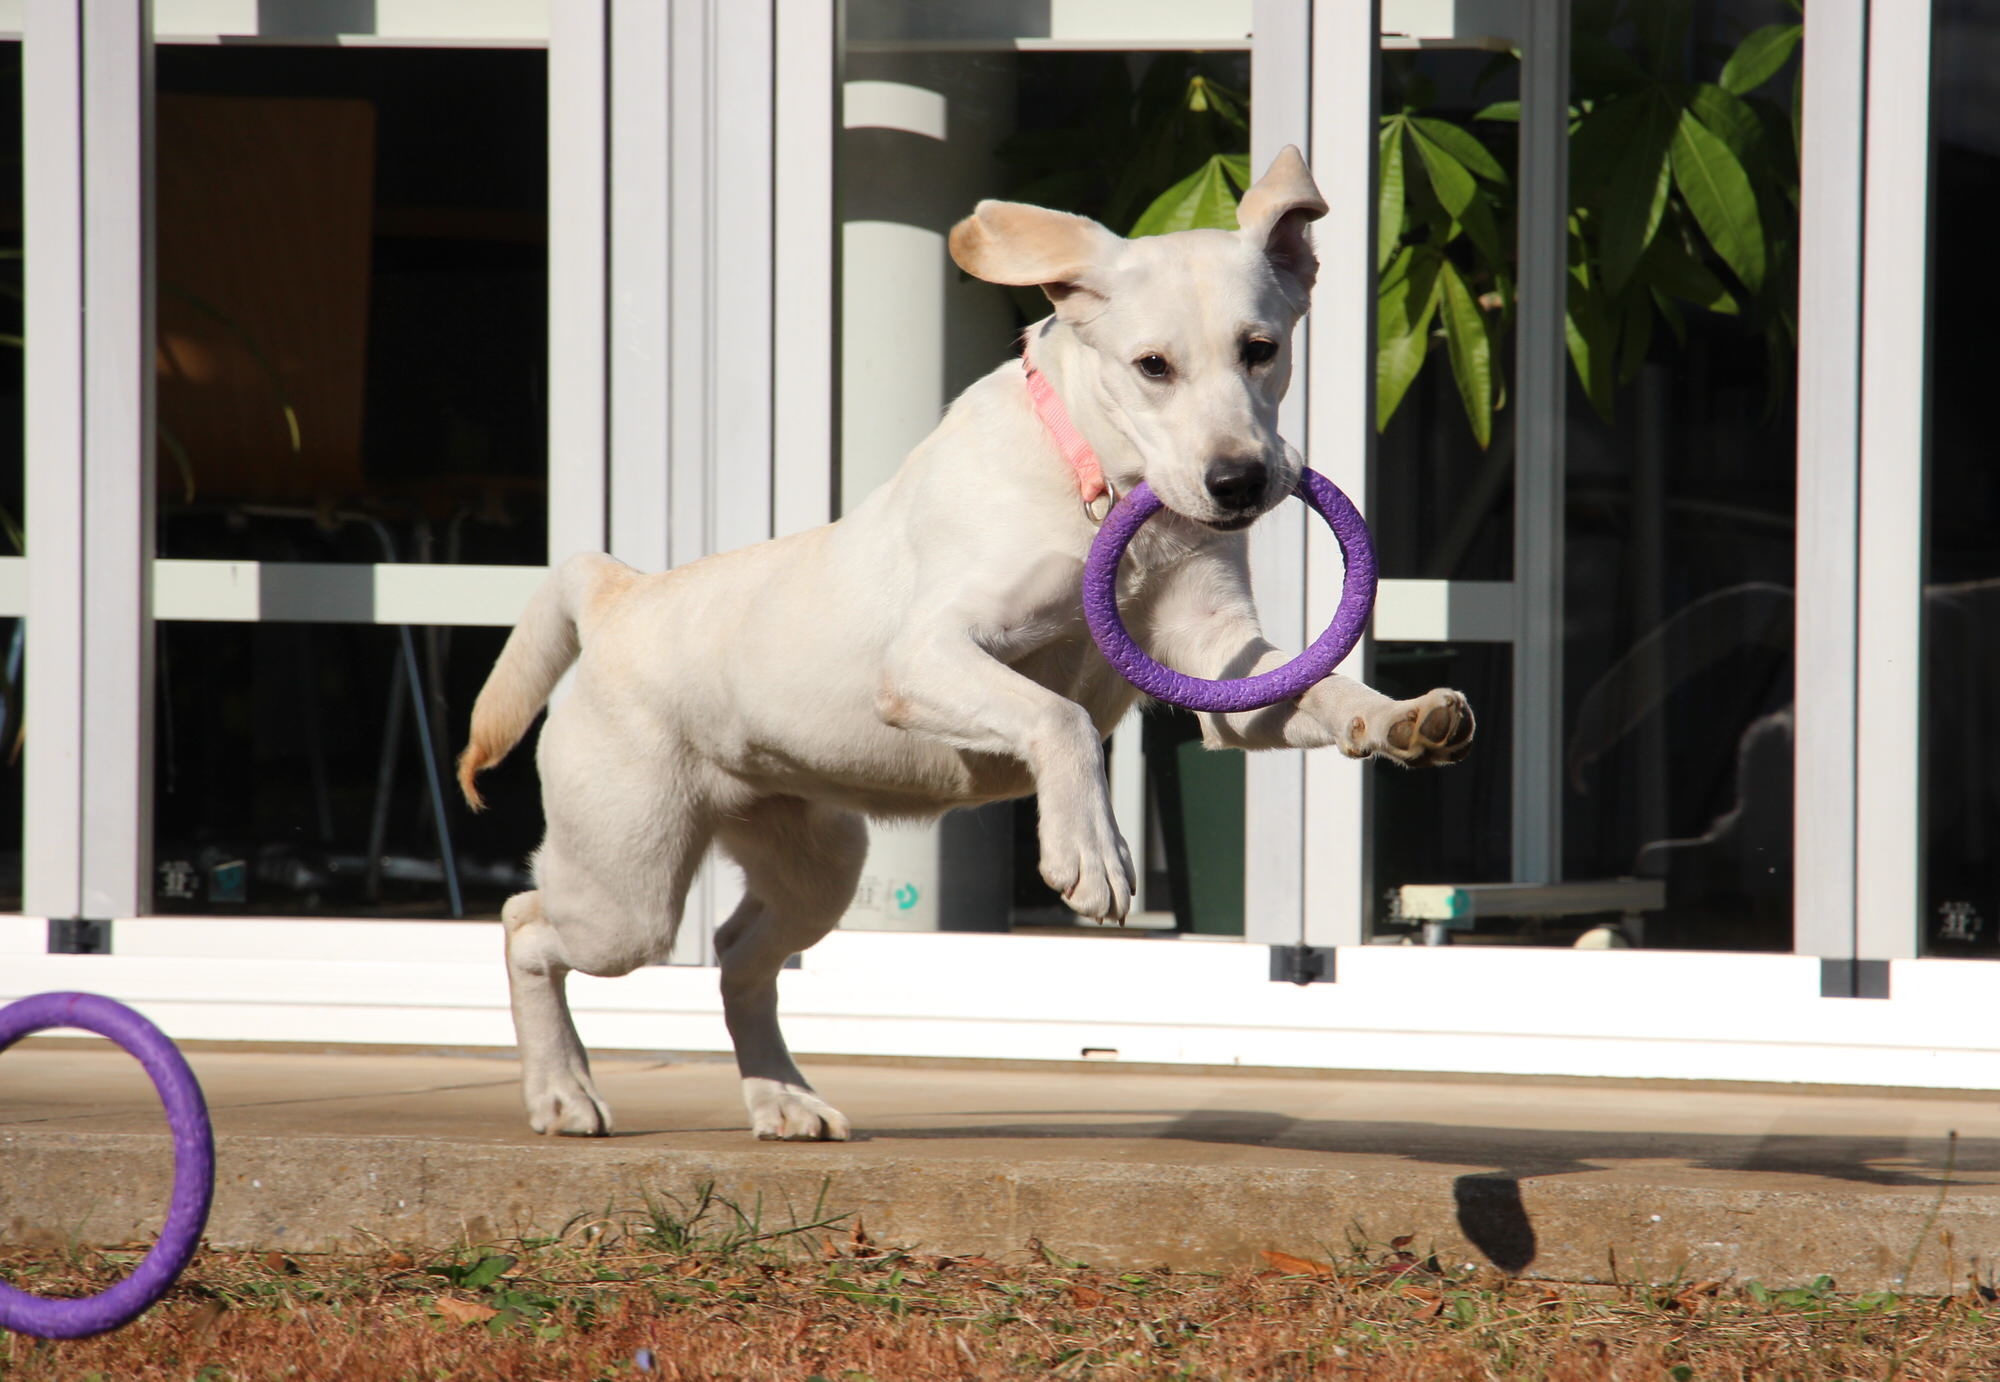 ドッグプレイニング®TOY「PULLER」で遊びながら犬との信頼関係を築く…ドッグトレーナー向け【認定制度】も |  動物のリアルを伝えるWebメディア「REANIMAL」